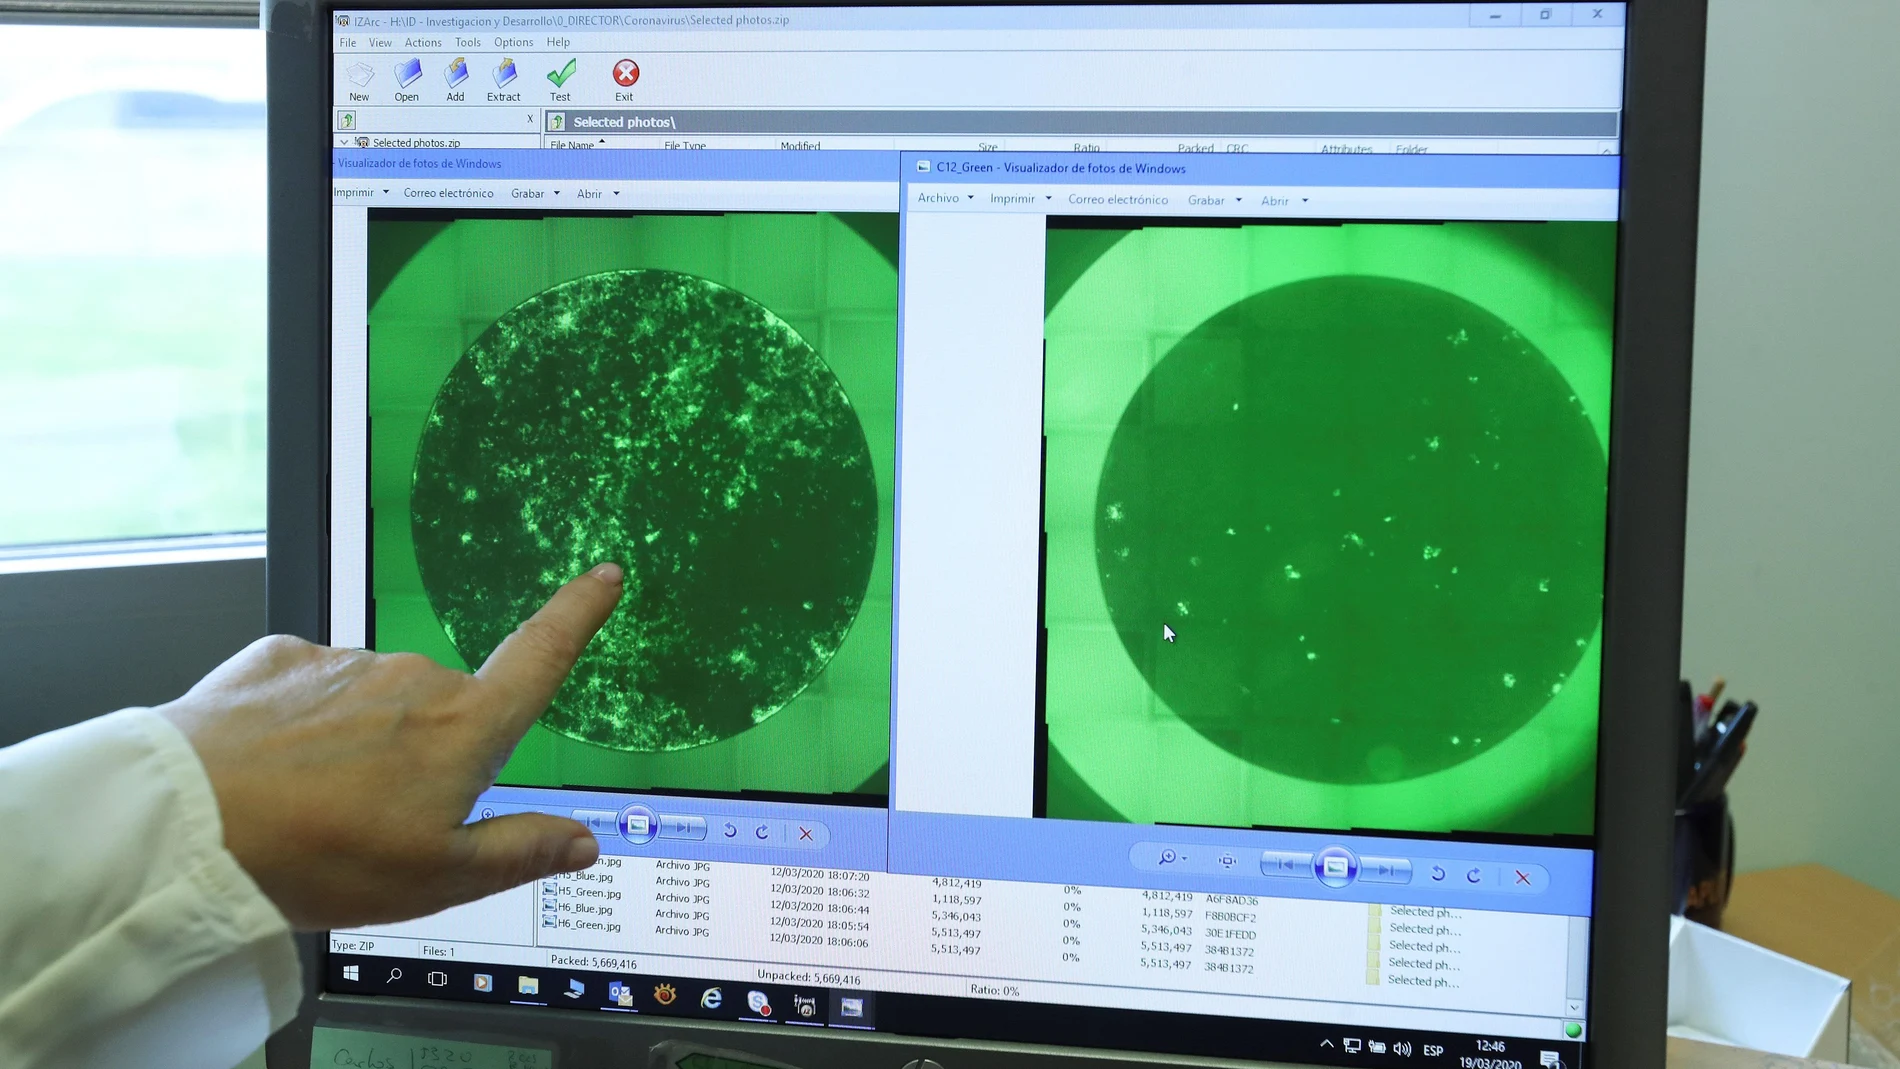 Una trabajadora de la empresa PharmaMar muestra las fotografías de una célula infectada con el Covid-19 y la misma célula tras ser tratada con Plitidepsina, en la que se puede apreciar la considerable disminución de las colonias de coronavirus.